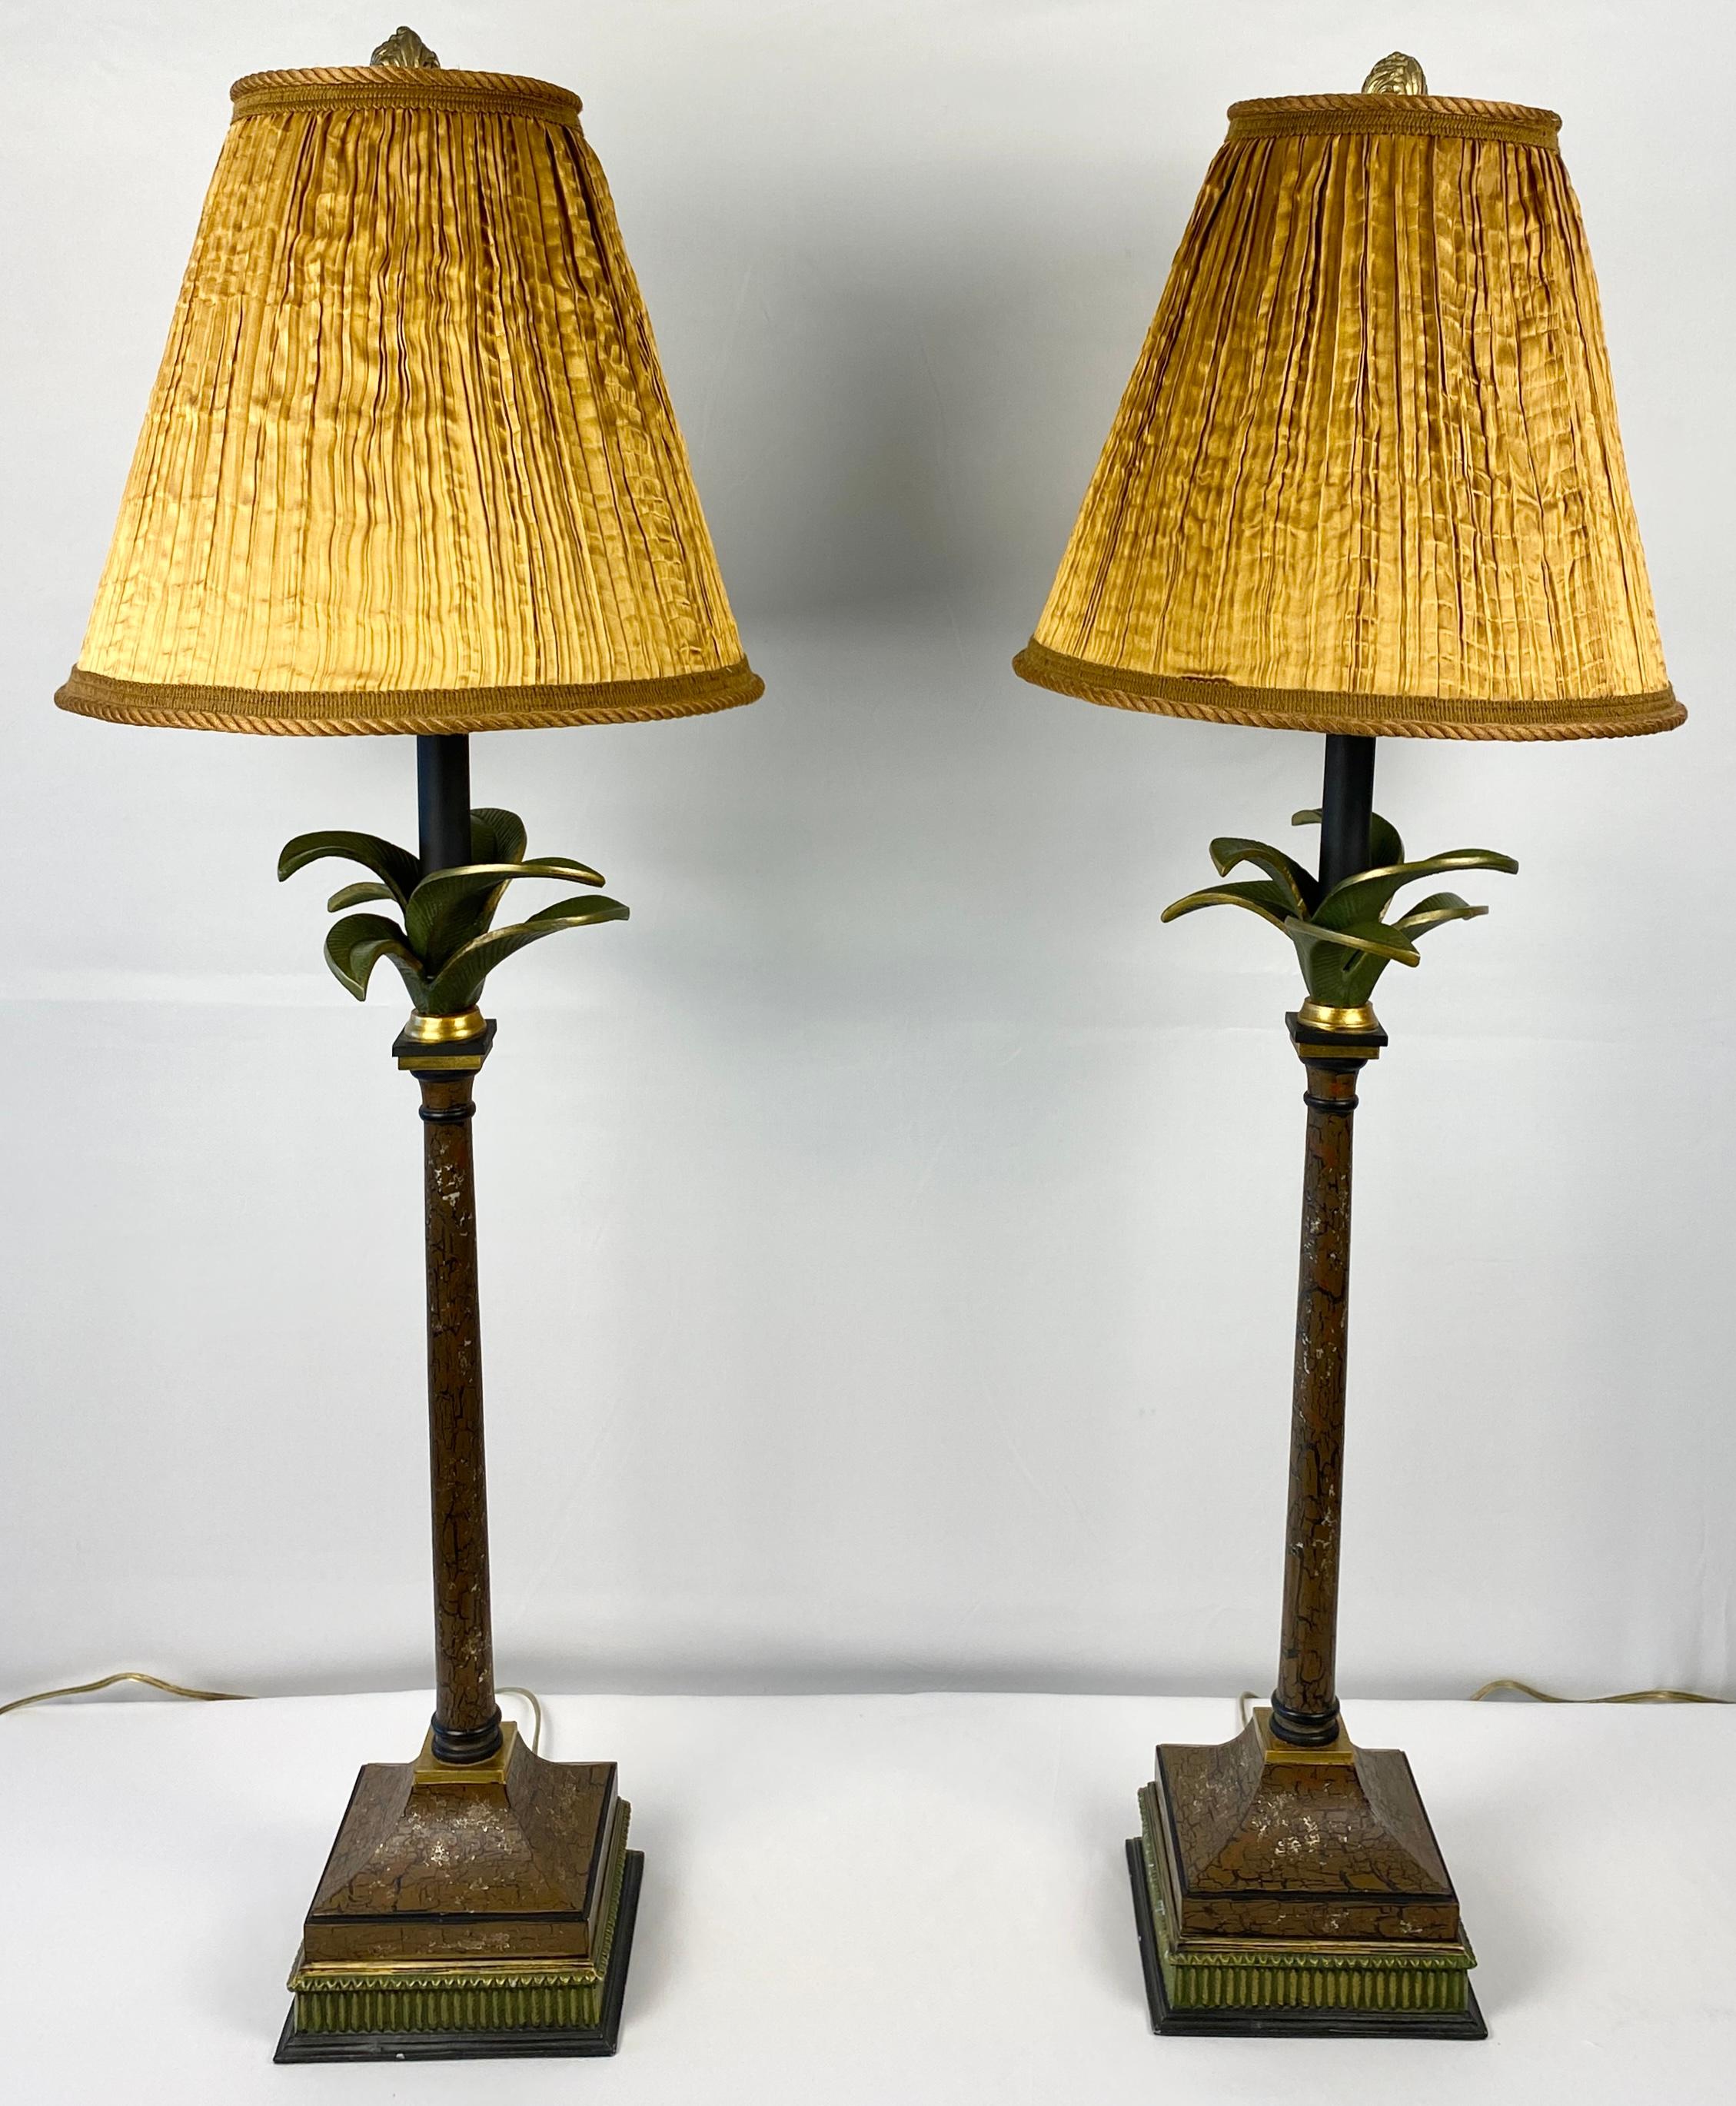 Paire de lampes de table en forme de palmier du milieu du siècle, stylisées et peintes dans des couleurs terreuses et présentant un attrait décoratif dynamique.

Cette élégante paire de lampes de table en forme de palmier du milieu du siècle